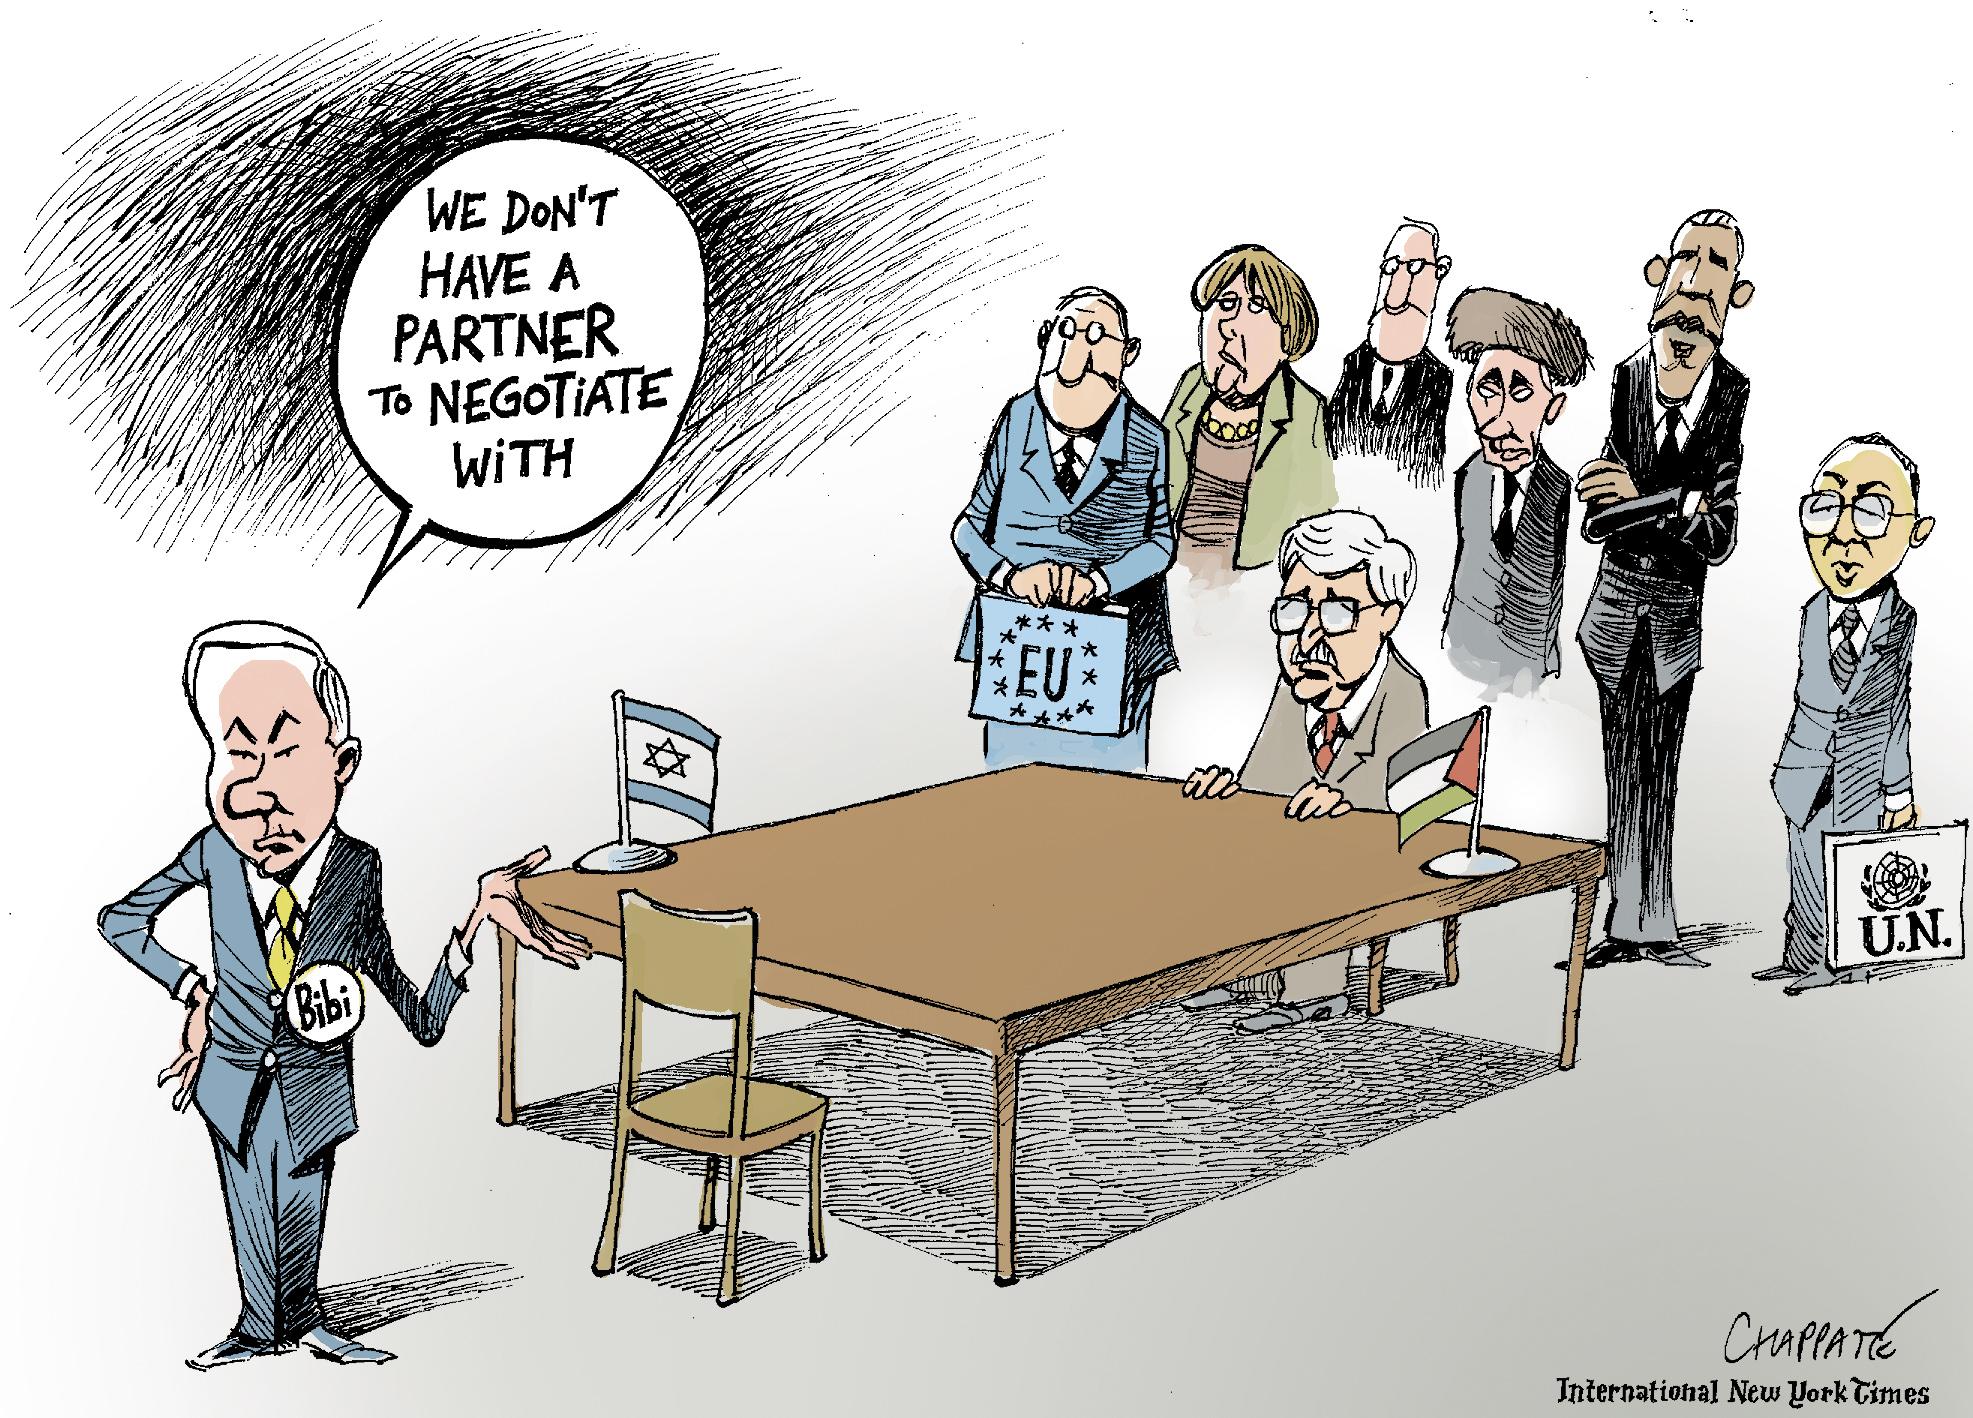 Netanyahu's position